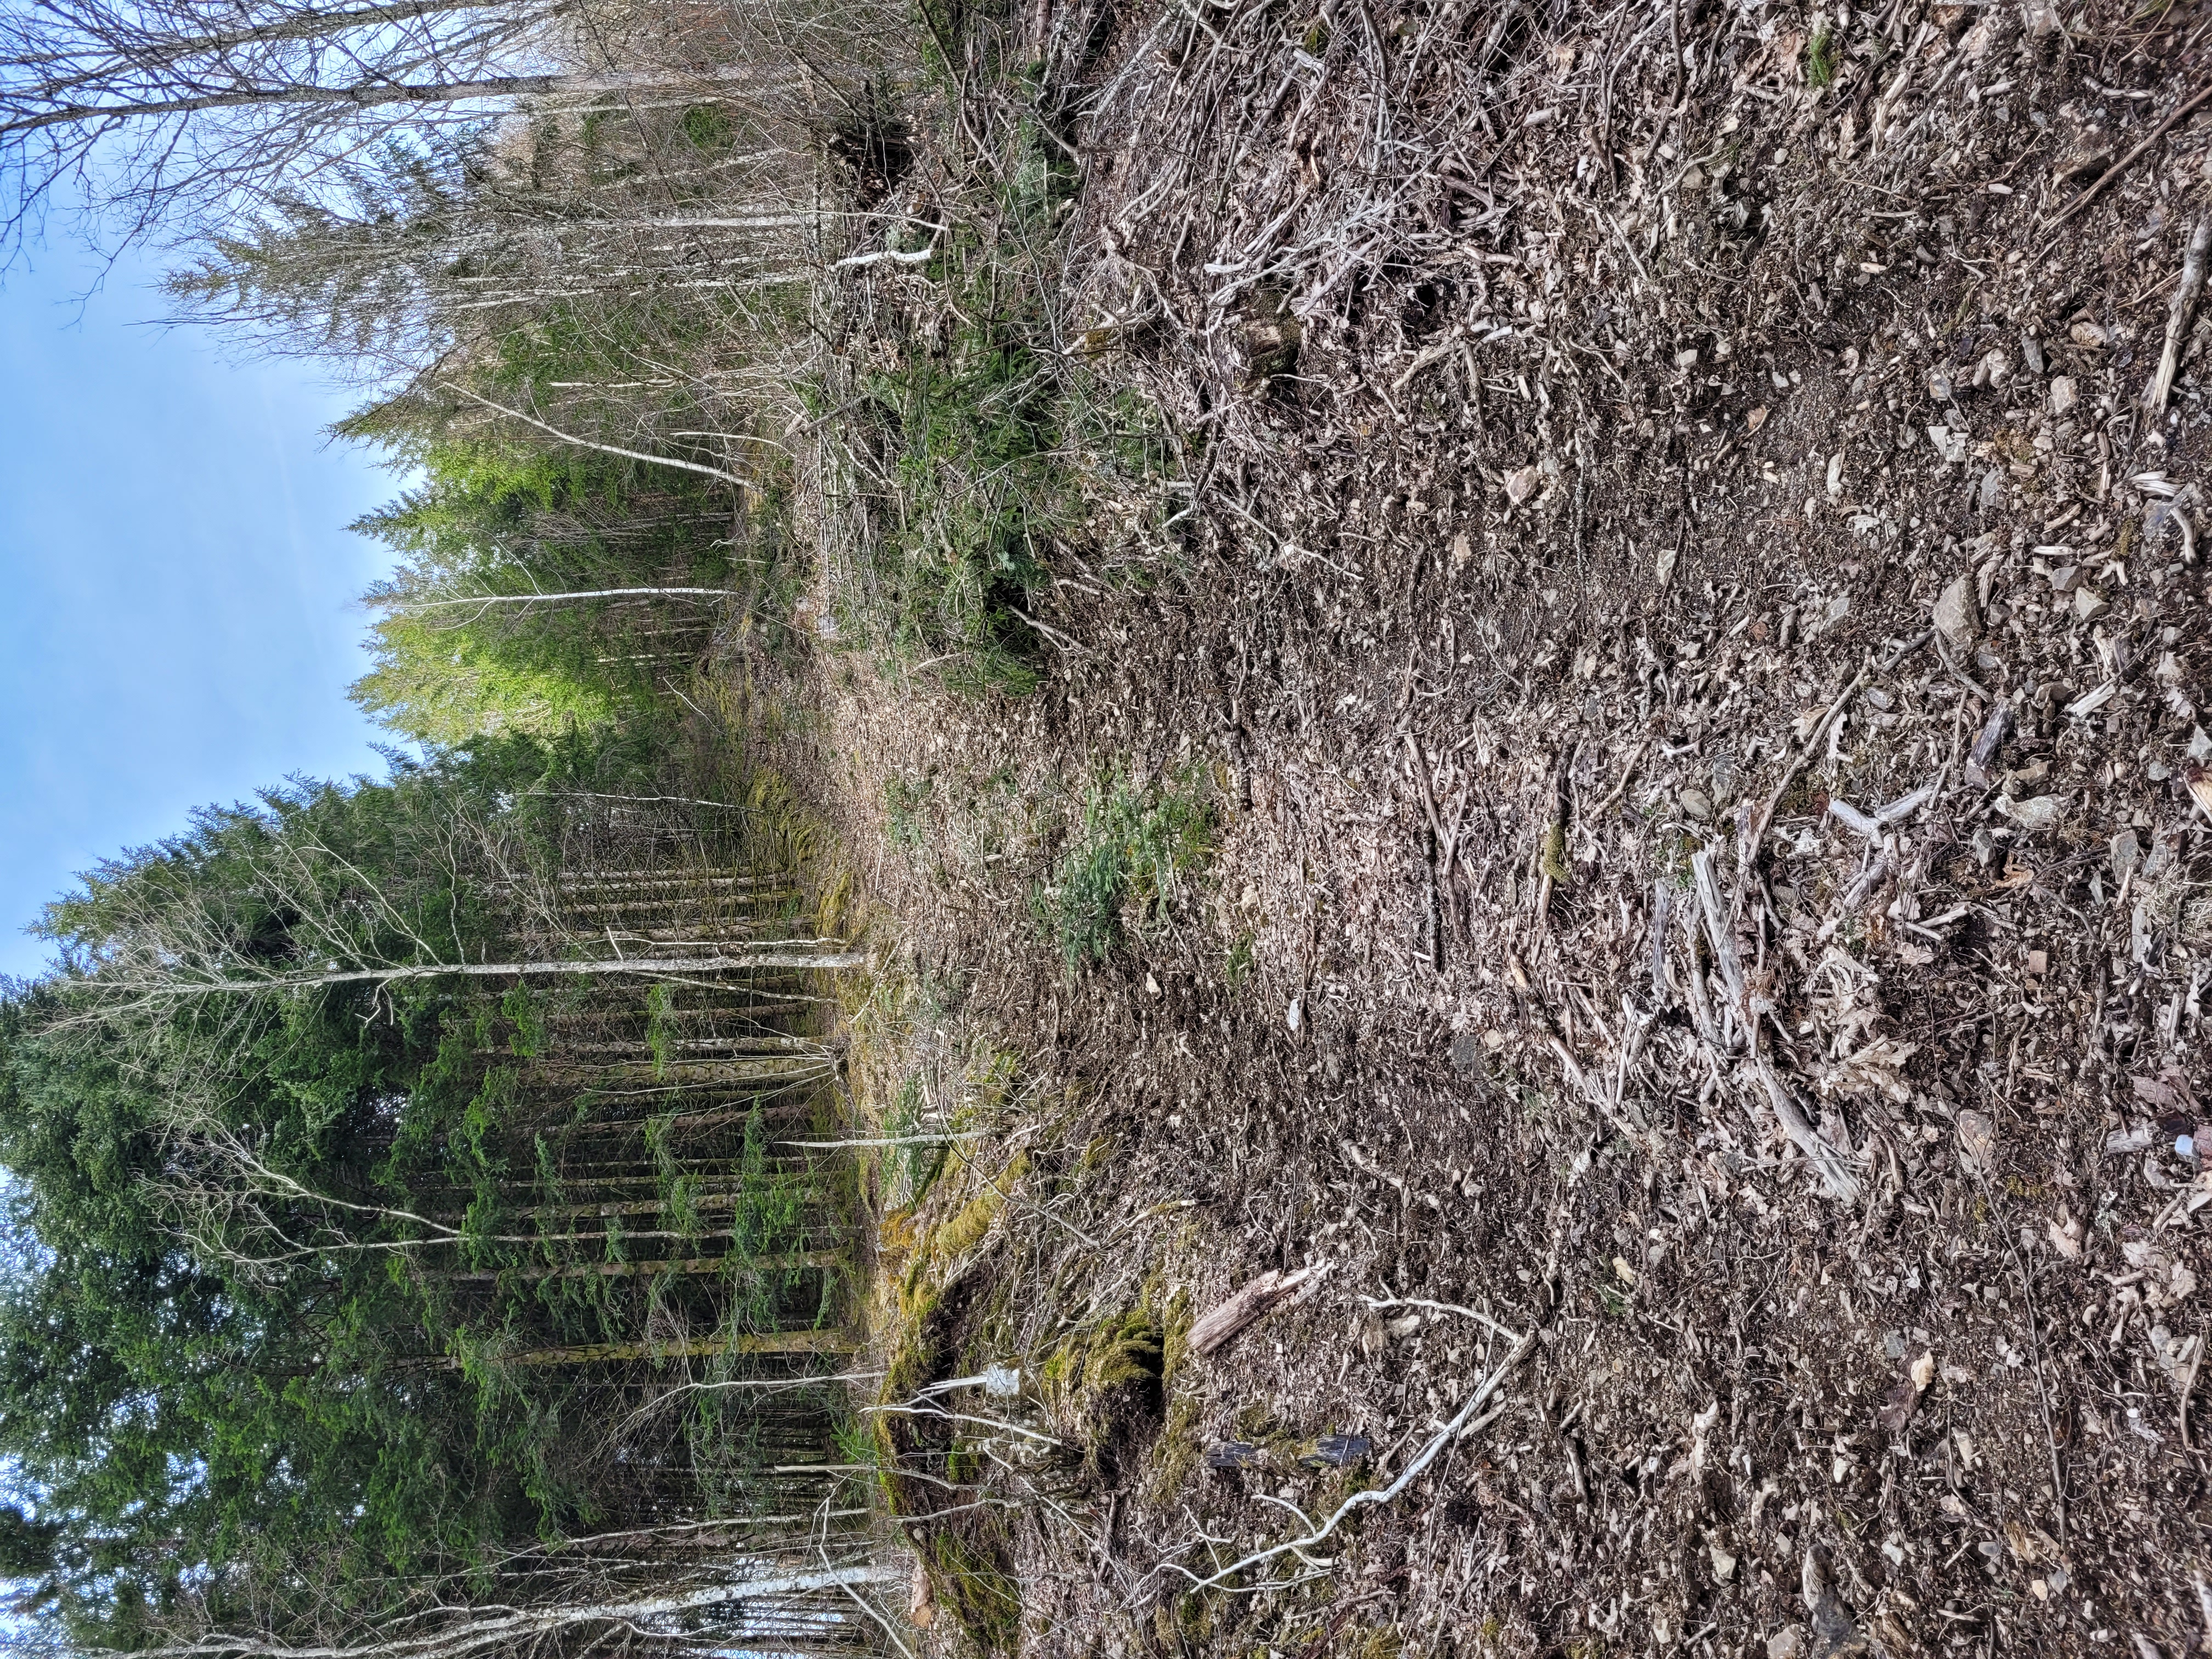 Photographie d'une voie en pente ascendente, ouverte dans la forêt par le passage d'un véhicule lourd. Le sol est creusé par deux sillons parallèles